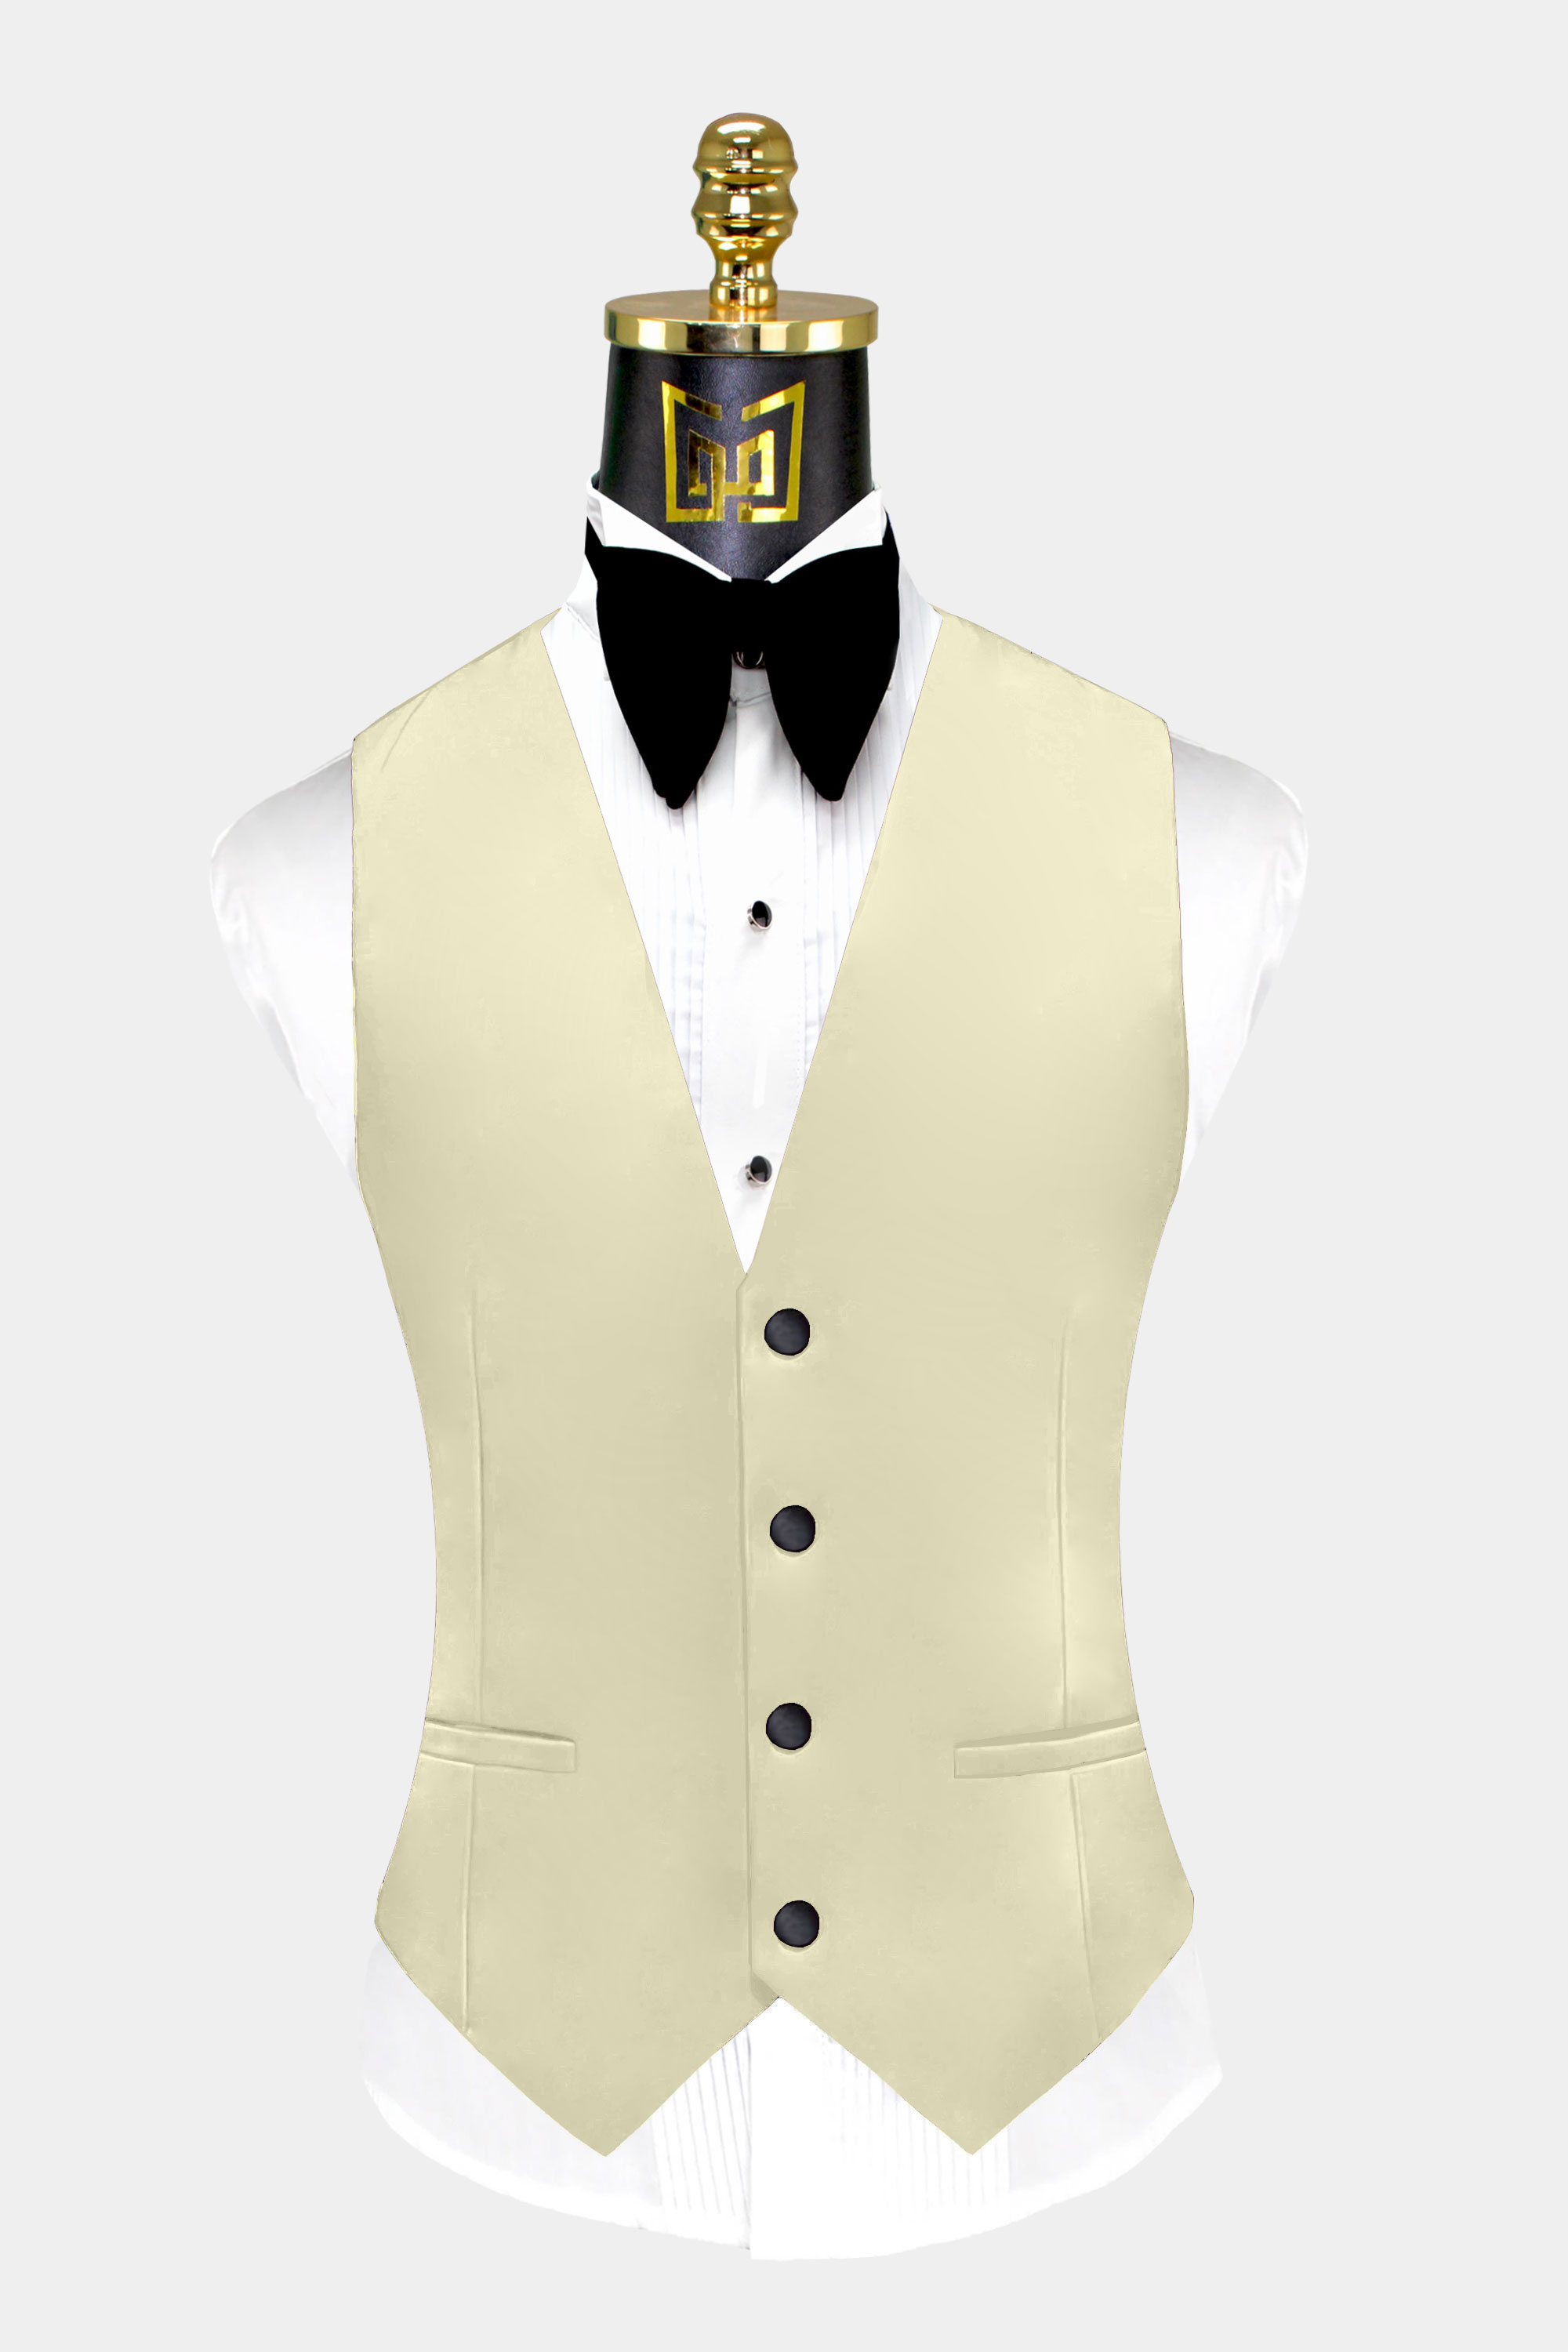 Mens-Champagne-Tuxedo-Vest-Groom-Wedding-Suit-Waistcoat-from-Gentlemansguru.com